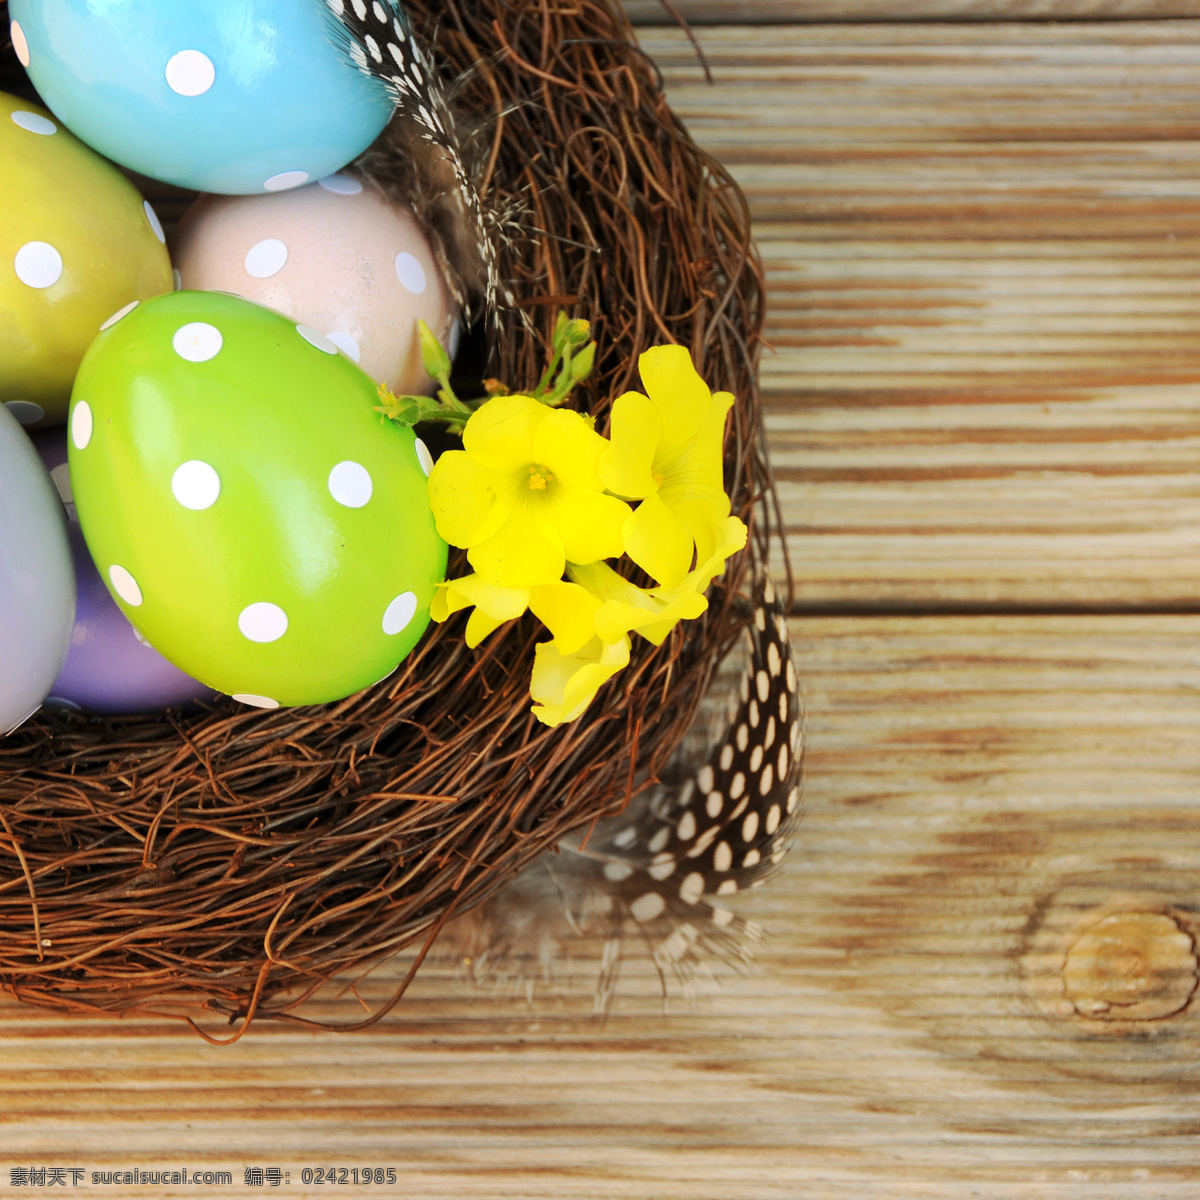 复活节彩蛋 复活节 彩蛋 圣诞节 鸡蛋 漂亮鸡蛋 染色鸡蛋 可爱 帽子 鸟巢 黄色